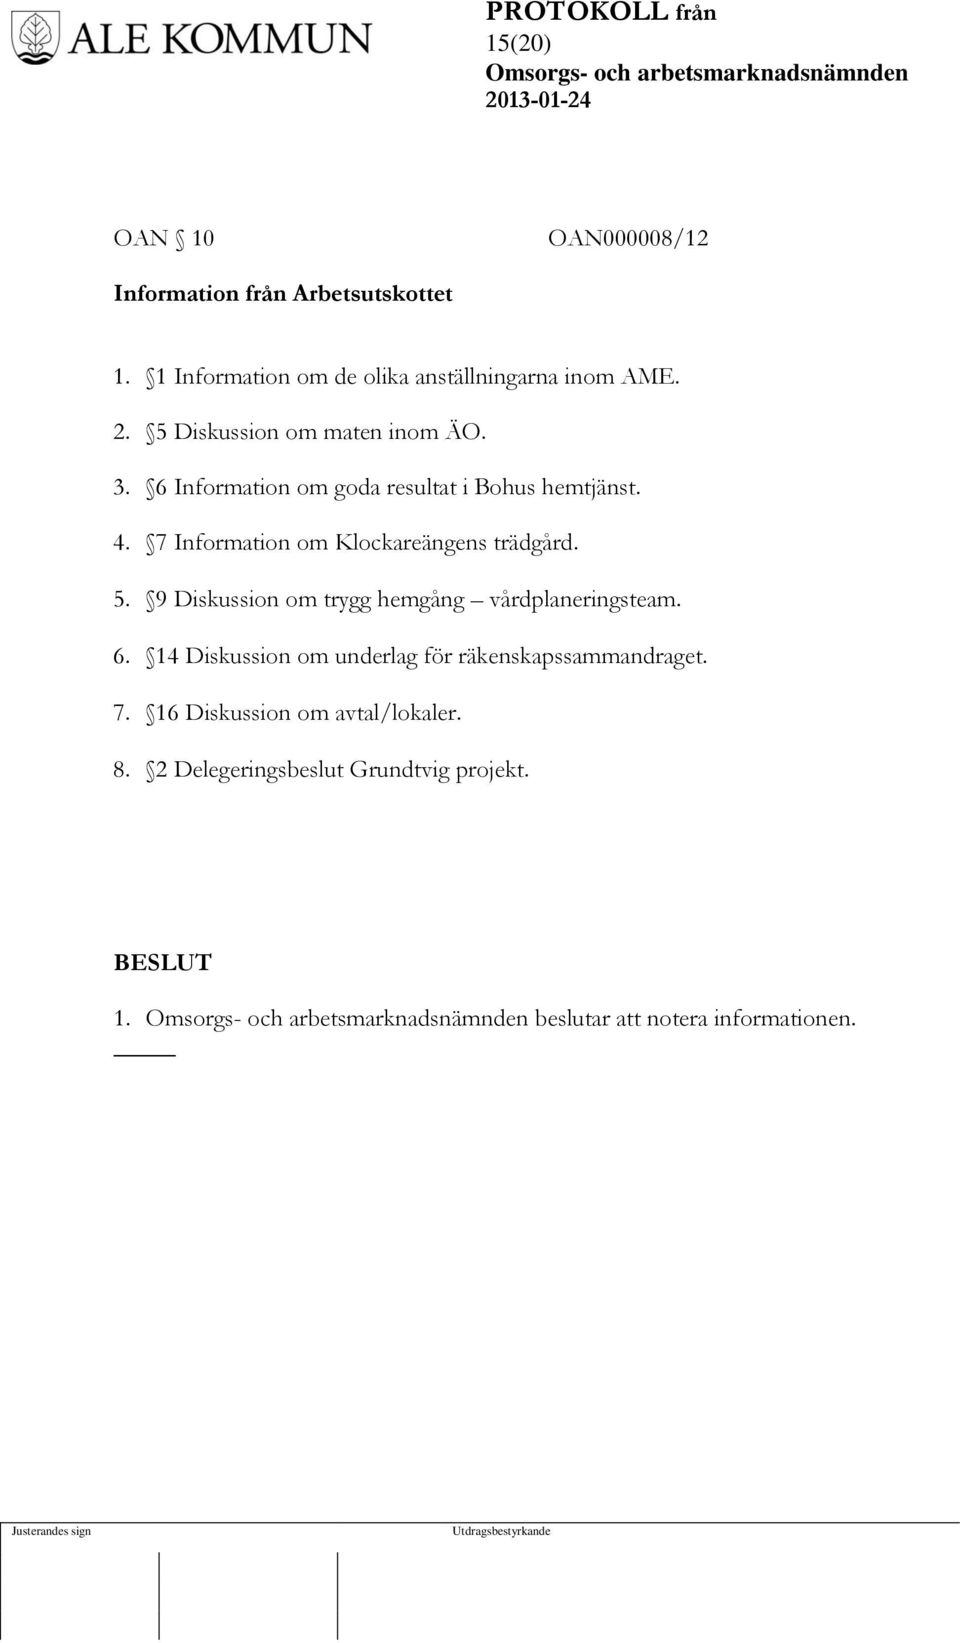 7 Information om Klockareängens trädgård. 5. 9 Diskussion om trygg hemgång vårdplaneringsteam. 6.